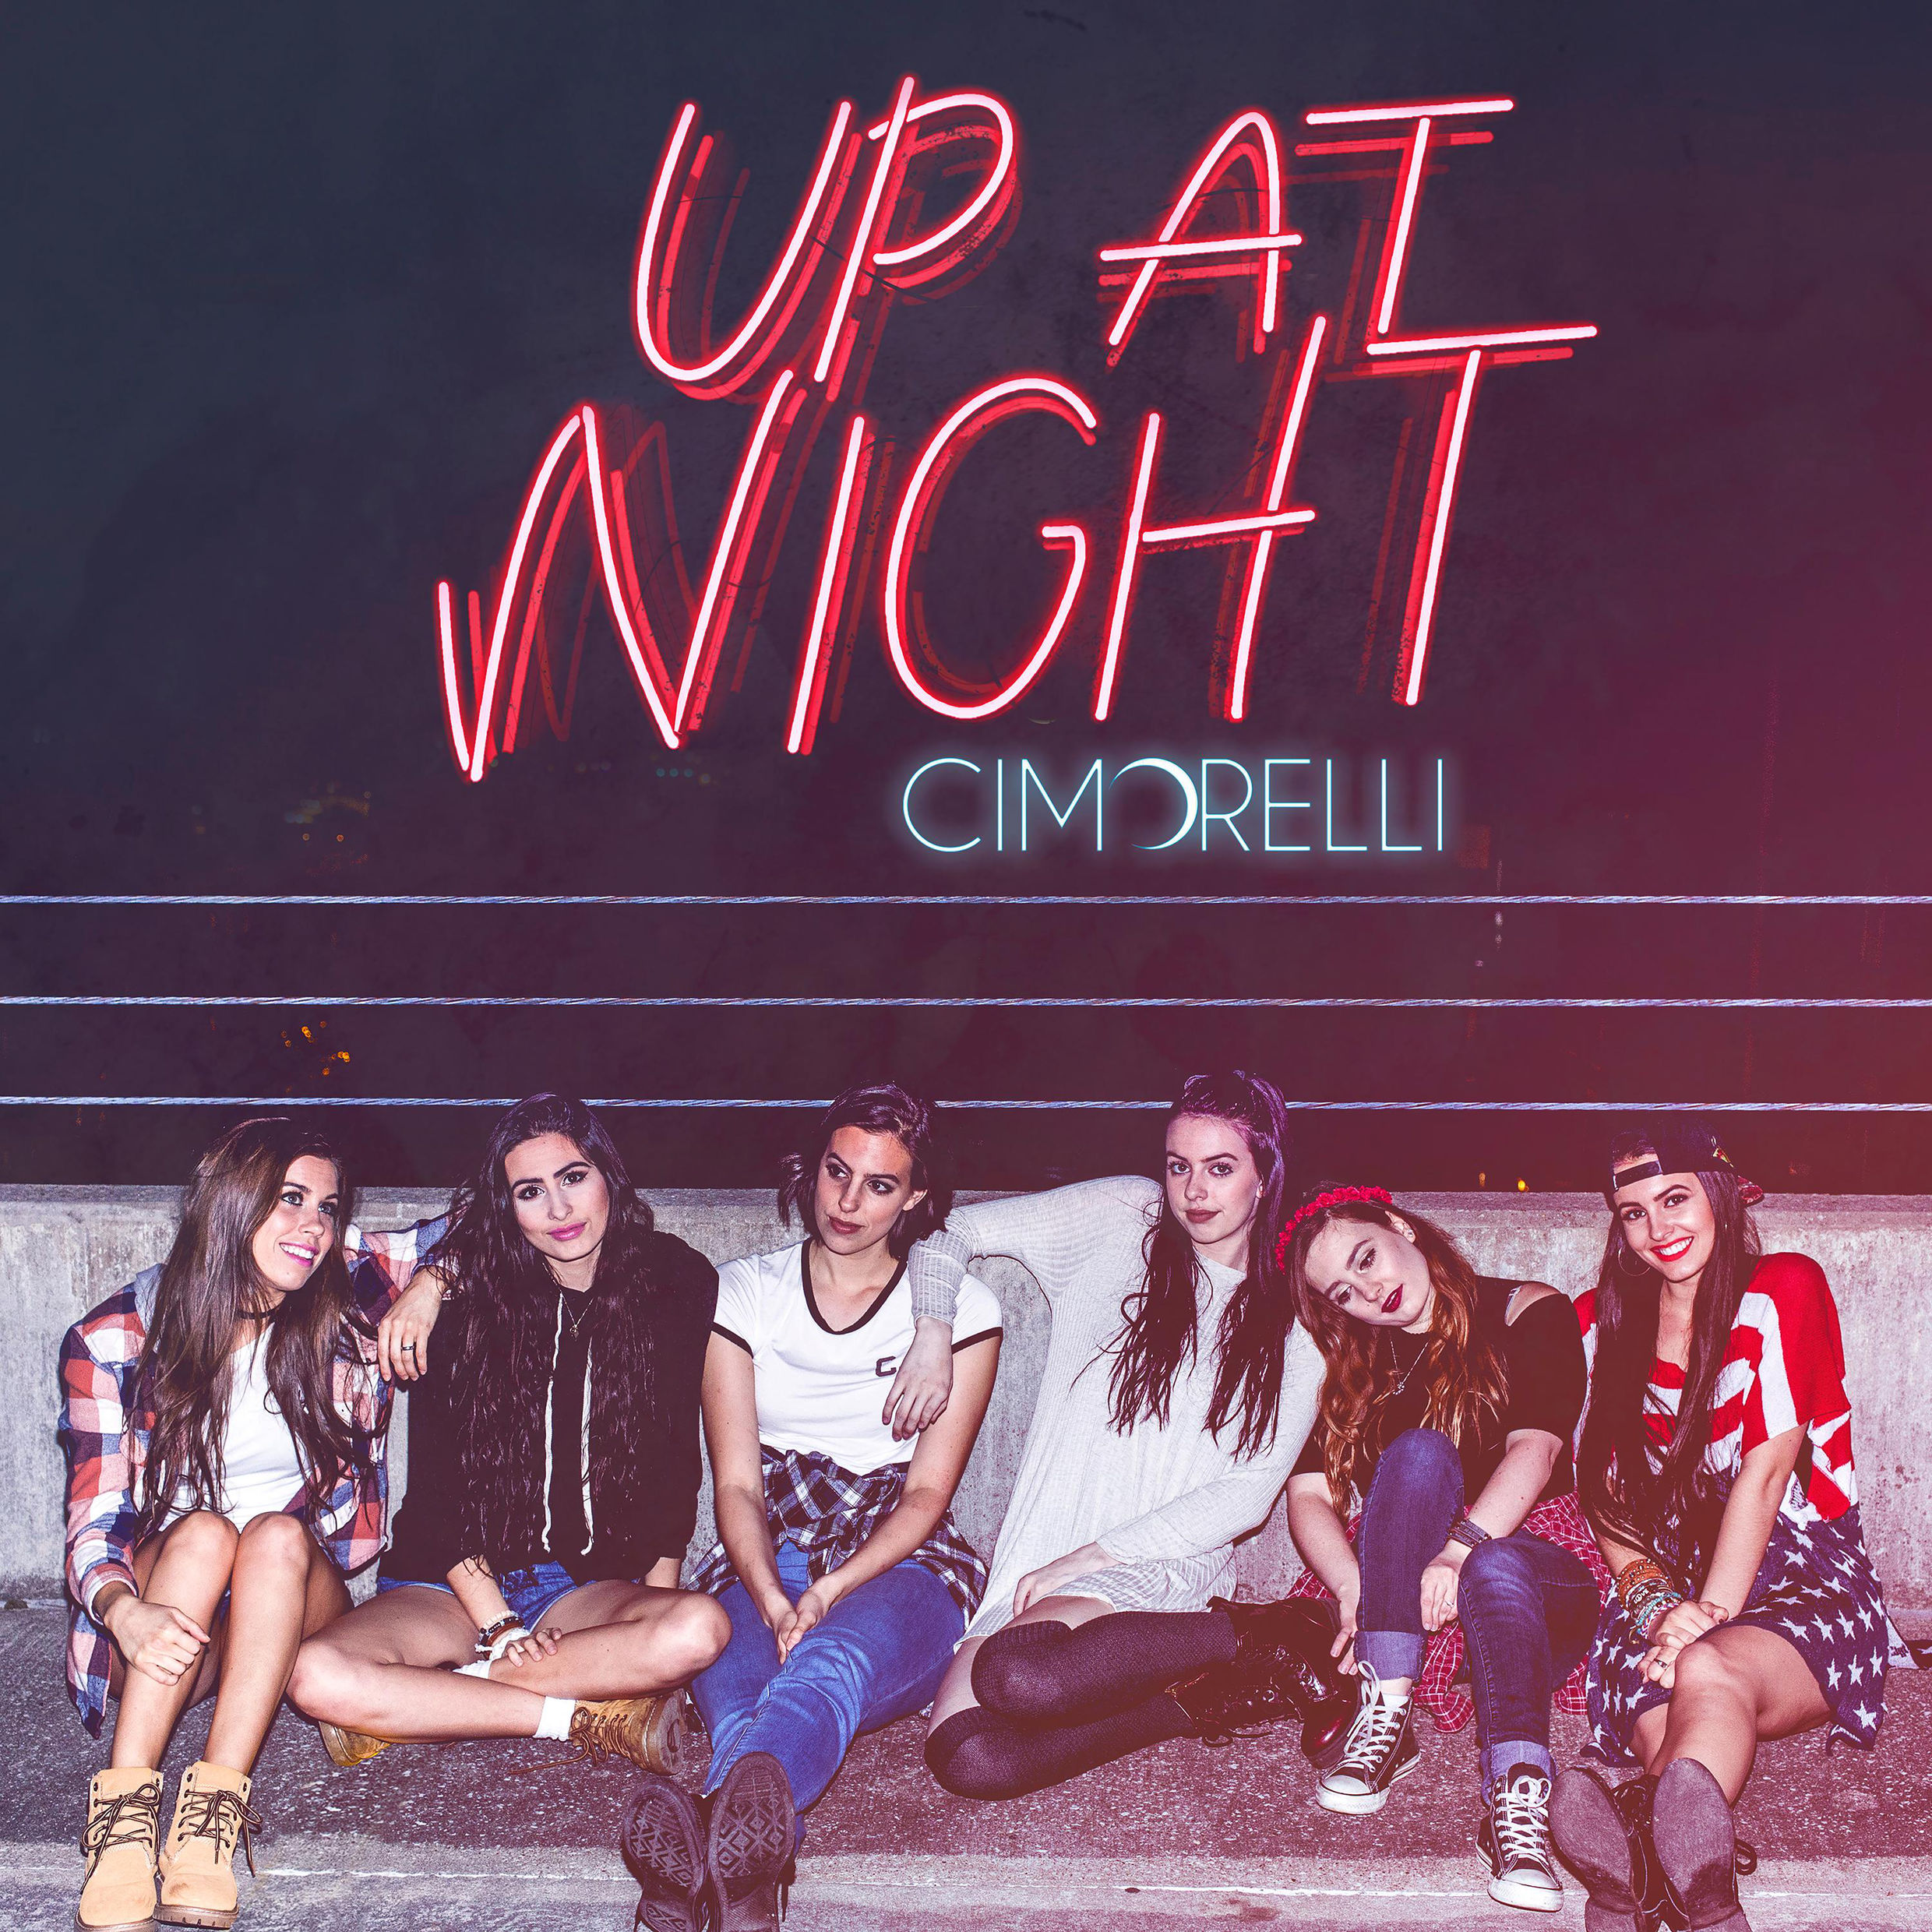 Cimorelli - Up At Night (album artwork cover)